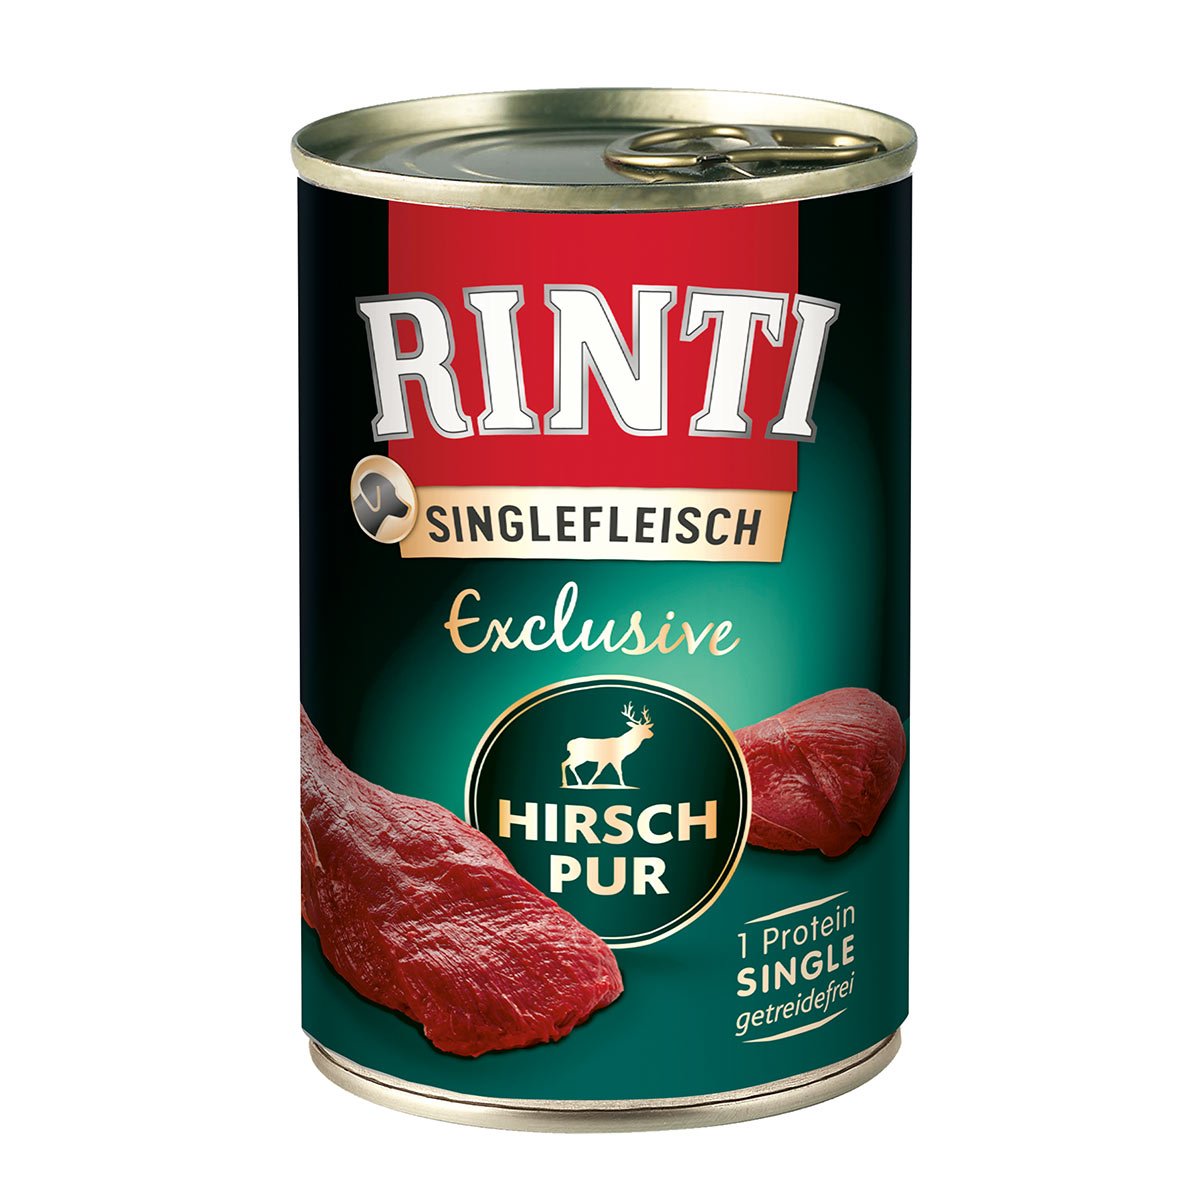 Rinti Singlefleisch Exclusive Hirsch pur 12x400g